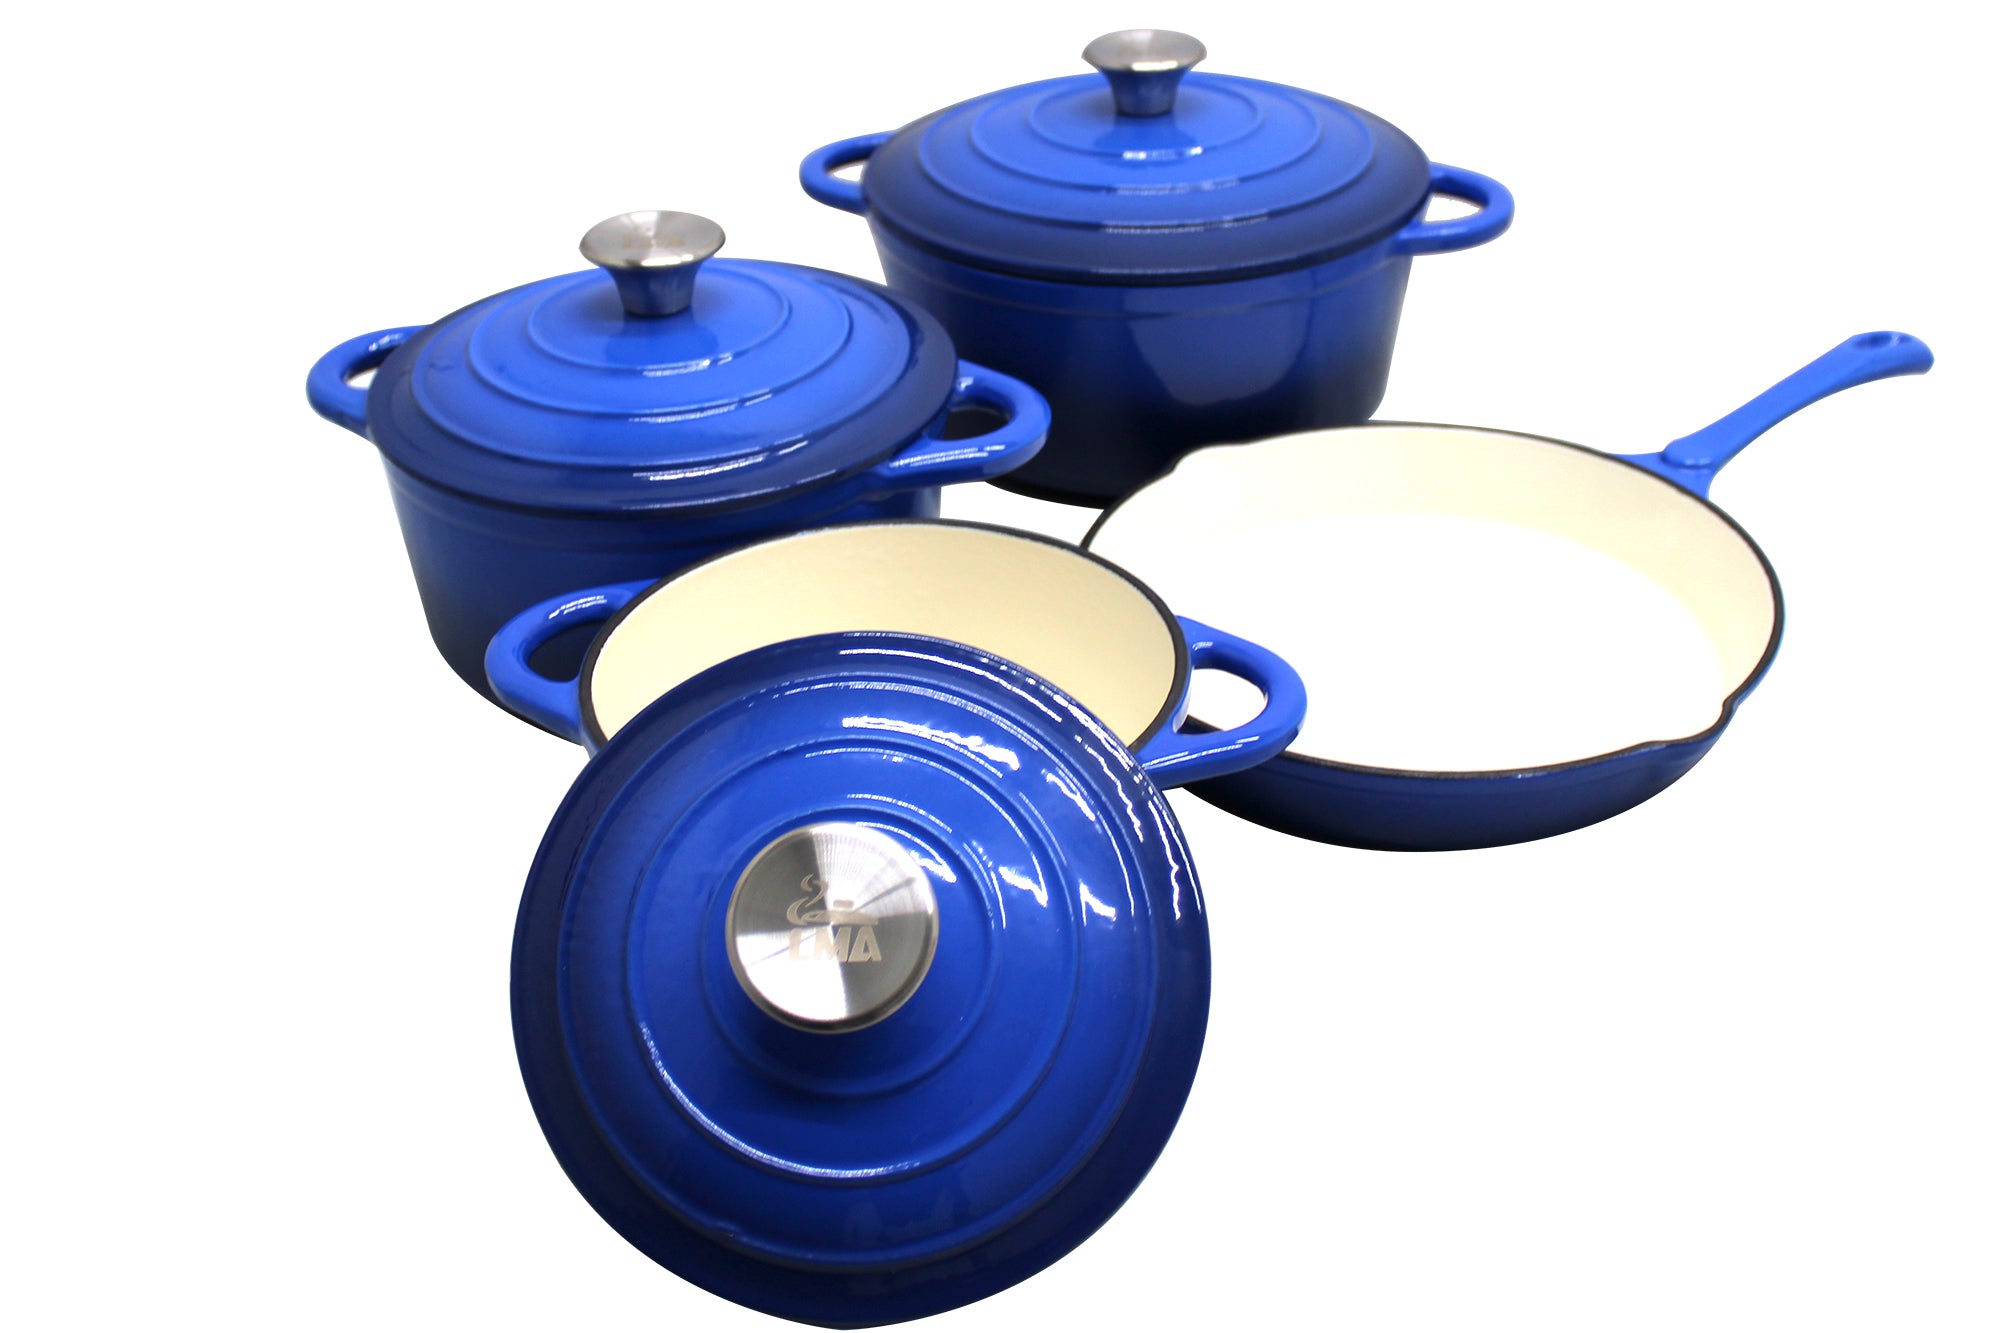 LMA Authentic Cast Iron Dutch Oven Cookware Pot Set 7 piece - Blue